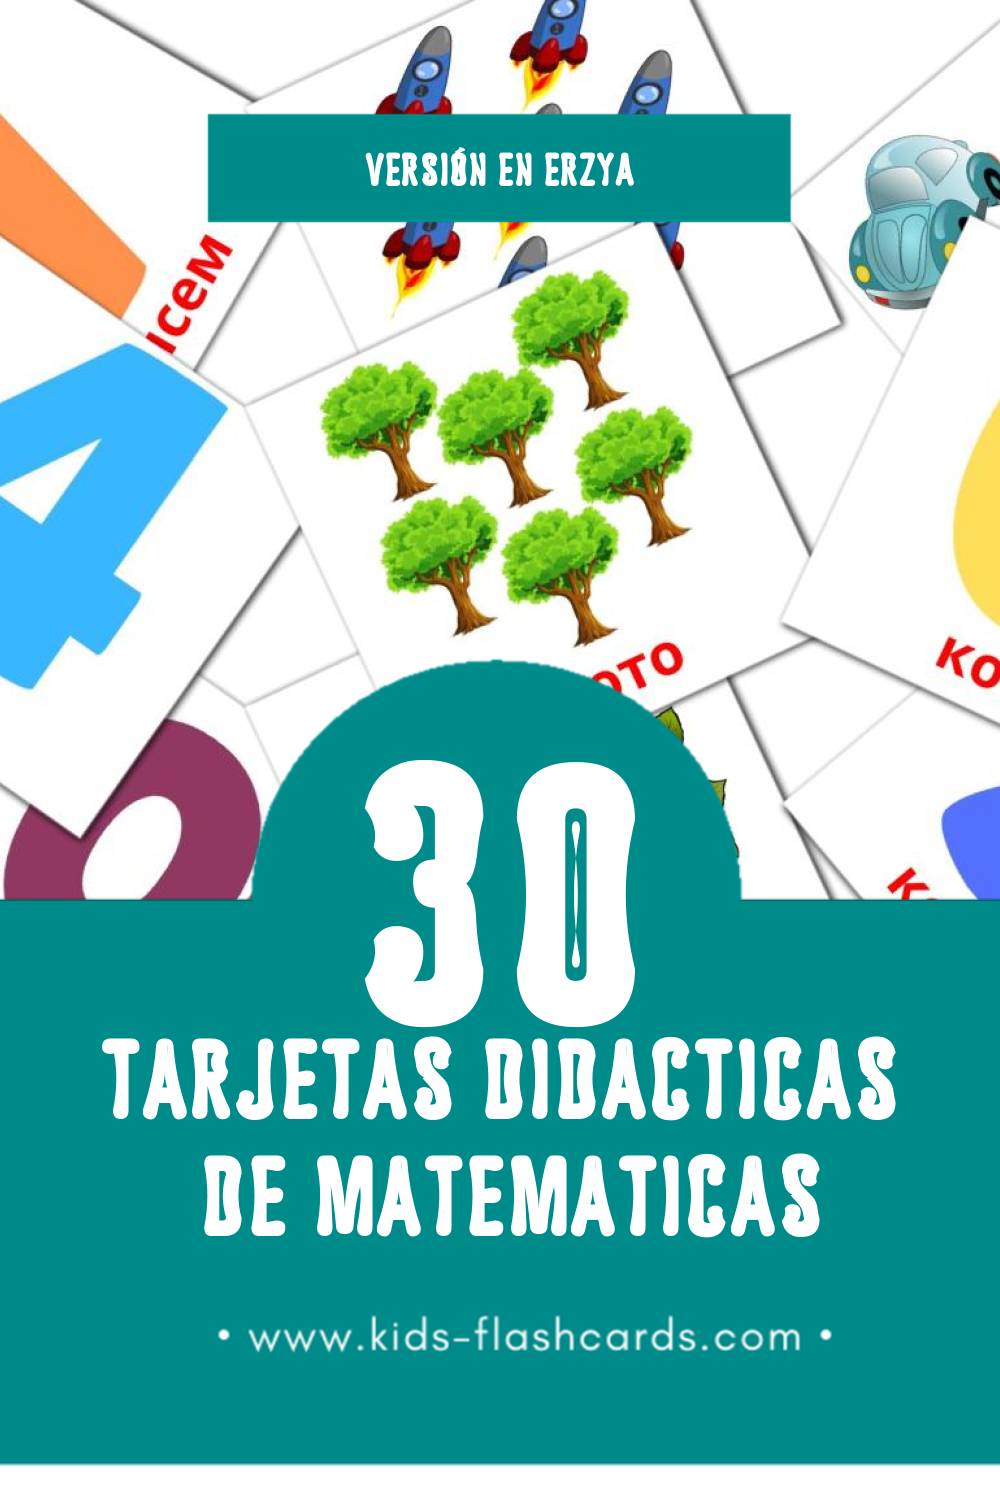 Tarjetas visuales de Математика para niños pequeños (30 tarjetas en Erzya)